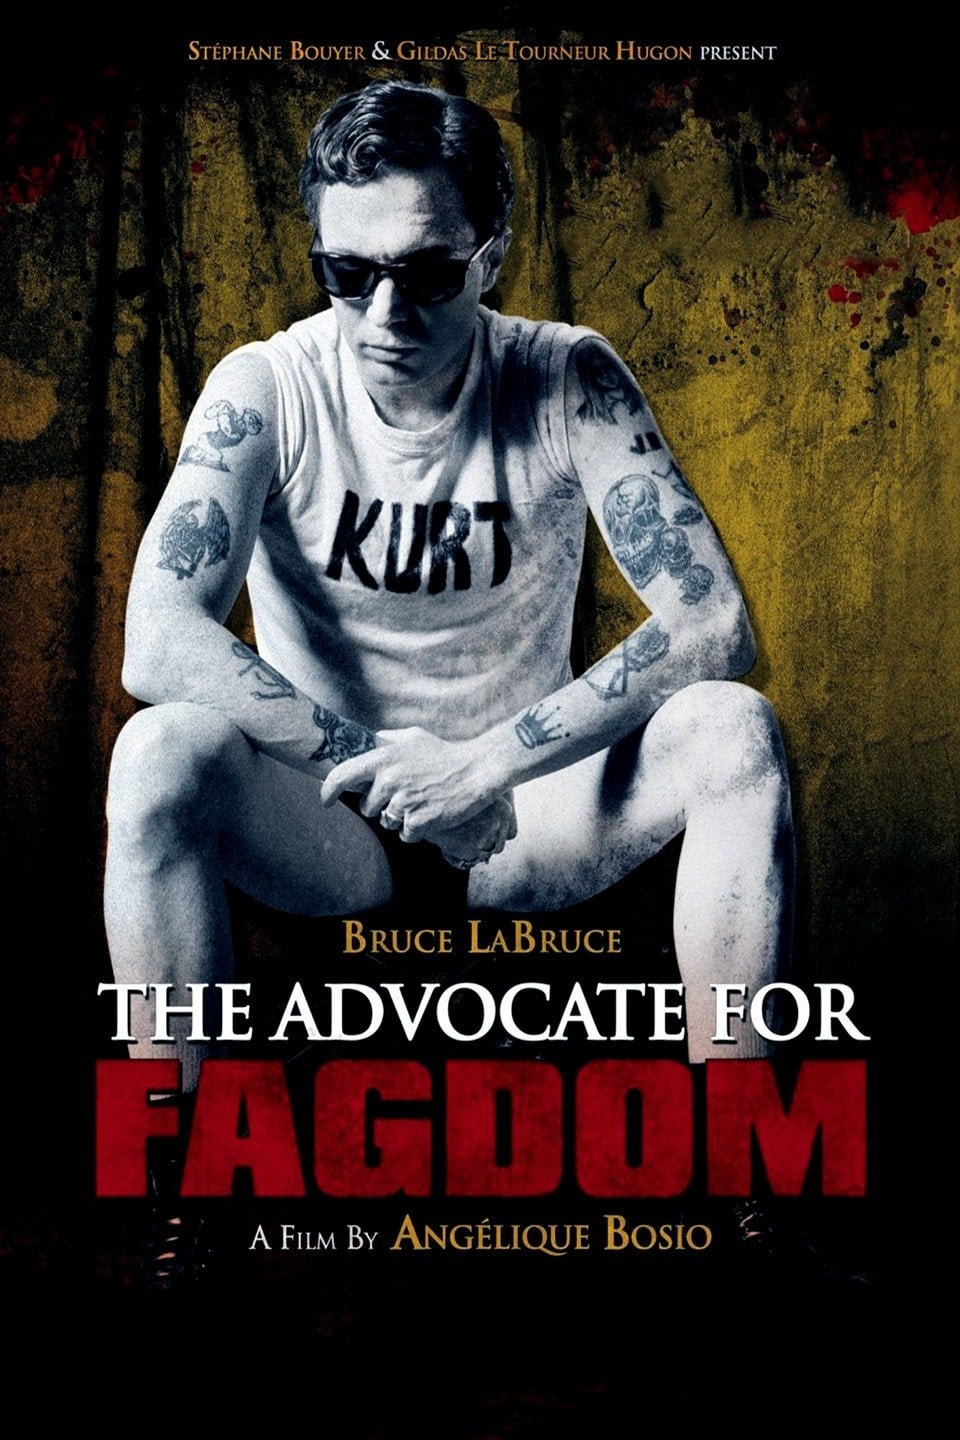 The Advocate for Fagdom film